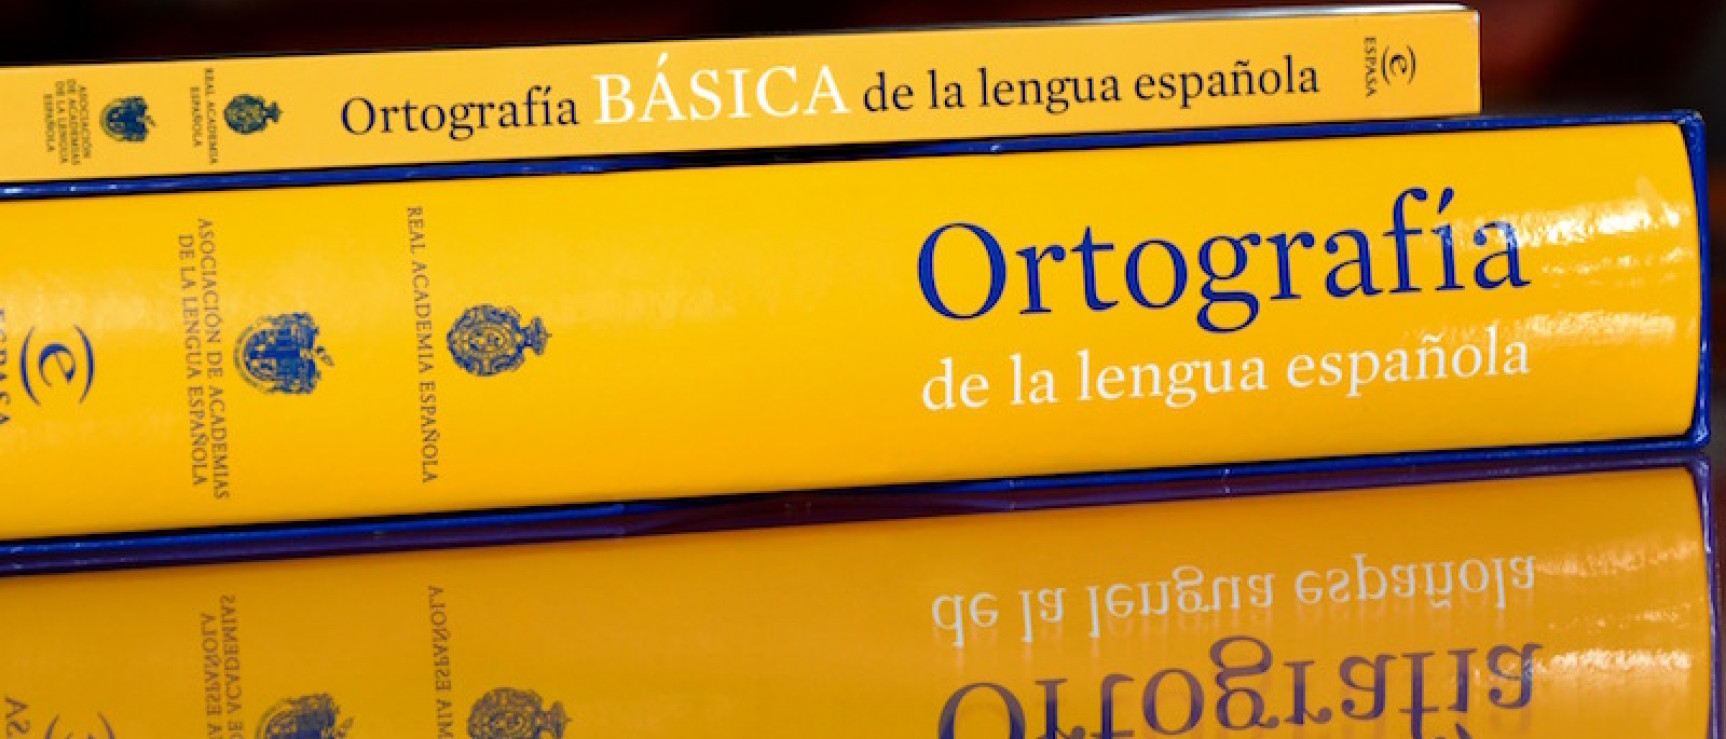 La última edición de la «Ortografía de la lengua española» se publicó en 2010.